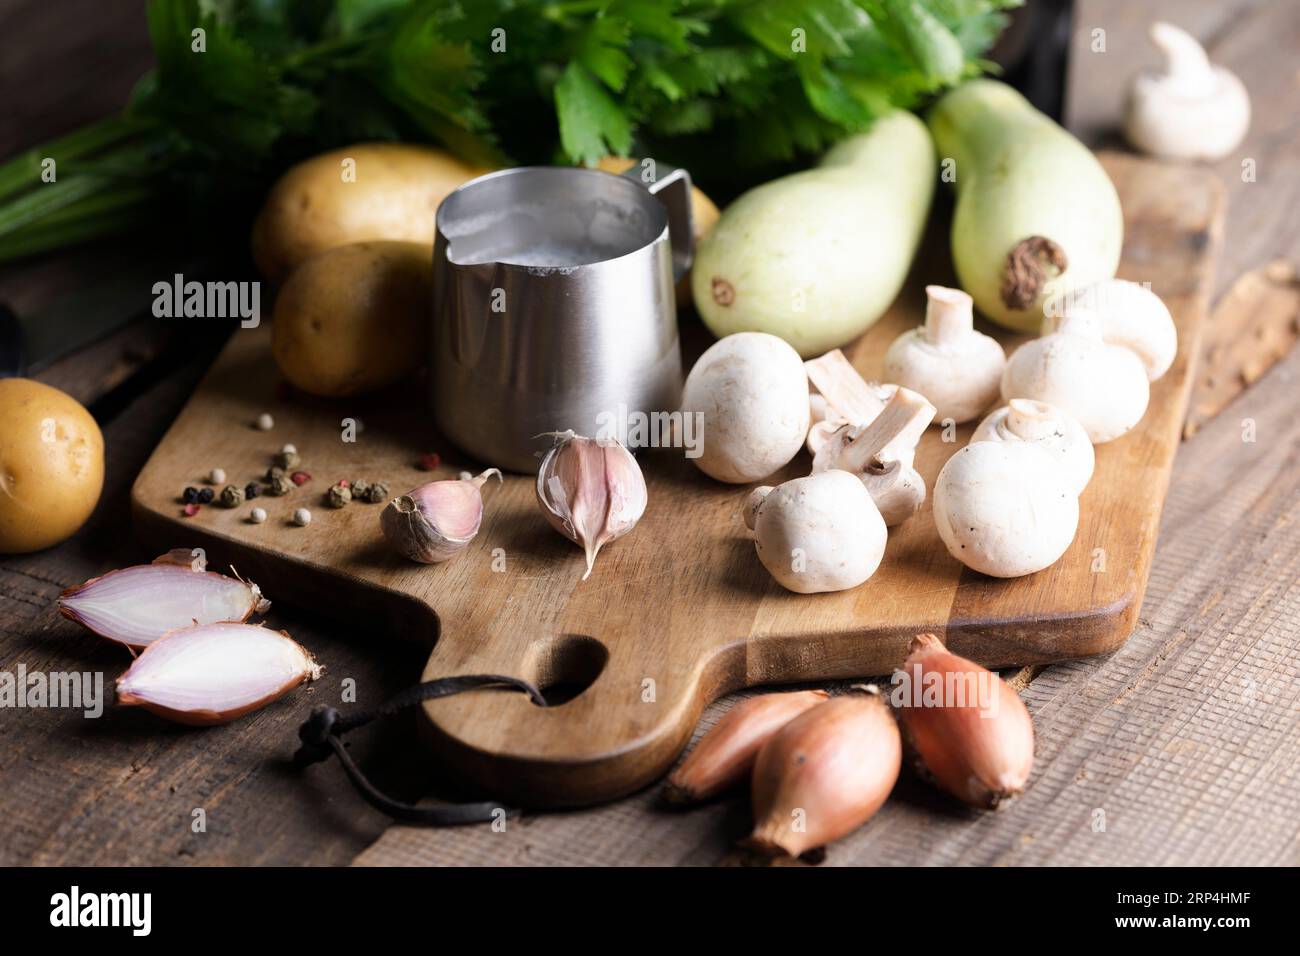 ingrédients pour la soupe sur une table en bois - pommes de terre, crème, courgettes, oignon, céleri Banque D'Images